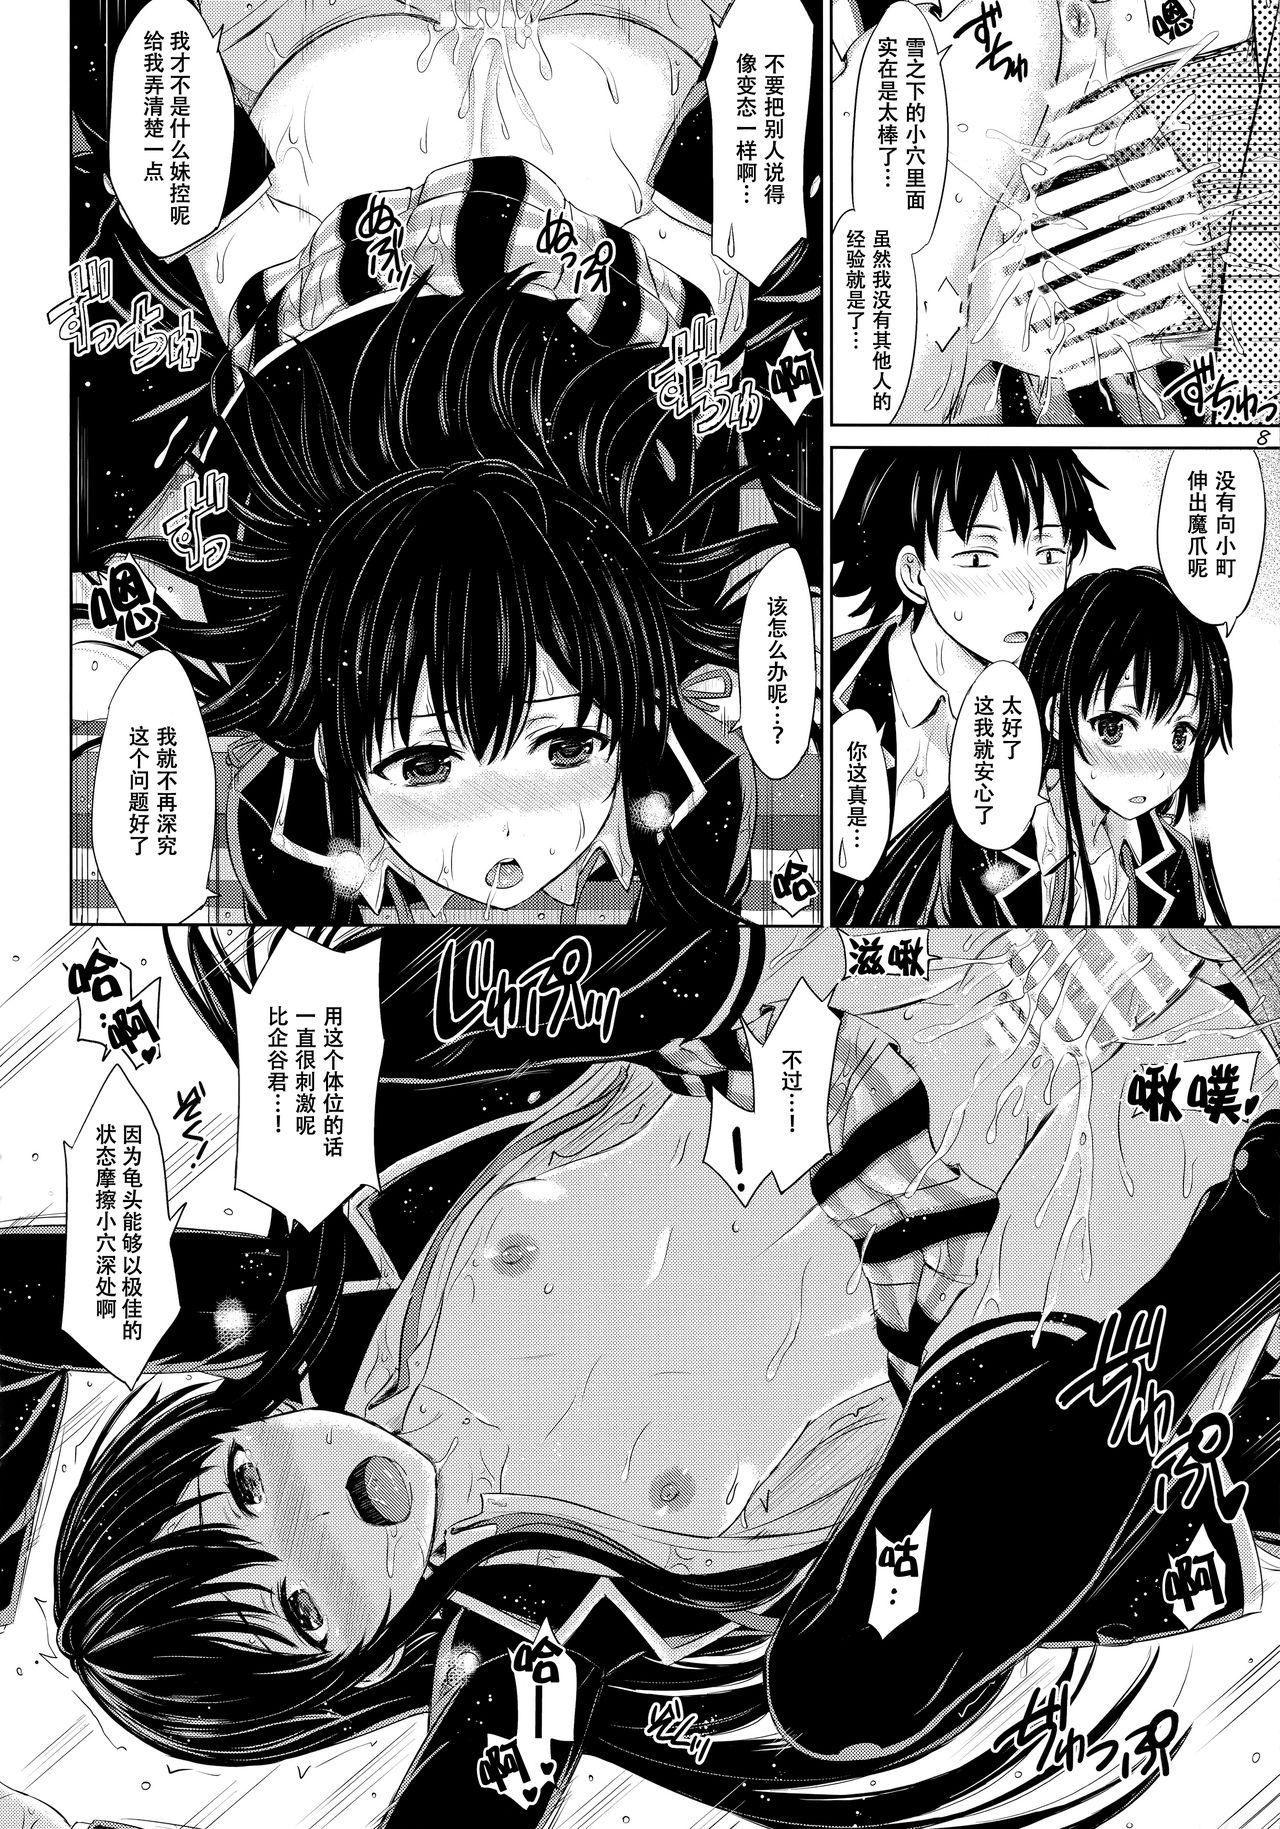 Topless Sanrenkyuu wa Asa made Nama Yukinon. - Yahari ore no seishun love come wa machigatteiru Ball Sucking - Page 8